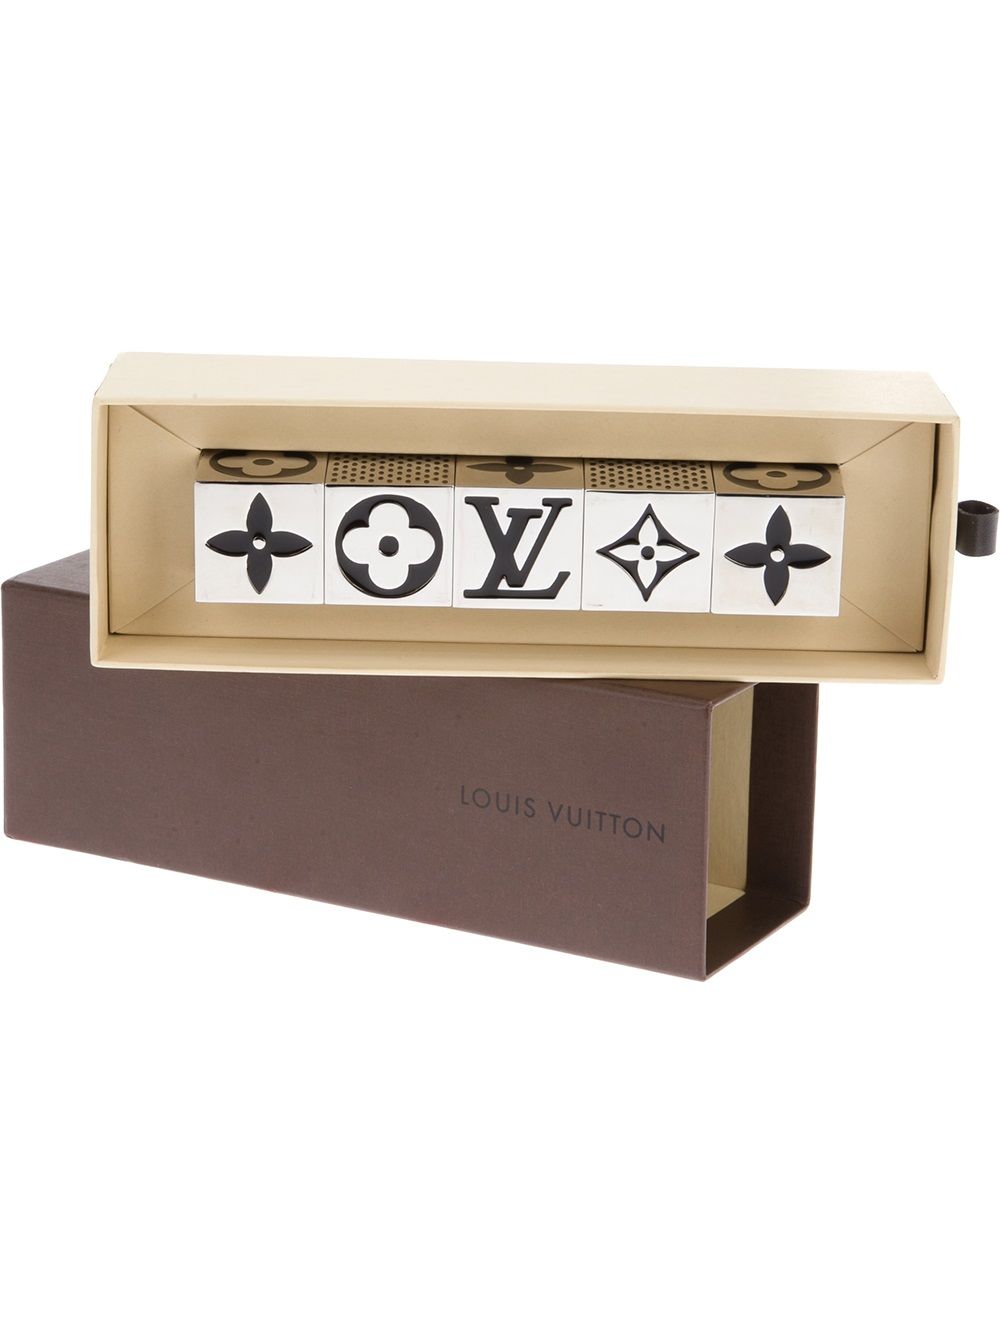 Louis Vuitton Clear Monogram Dice Set Limited